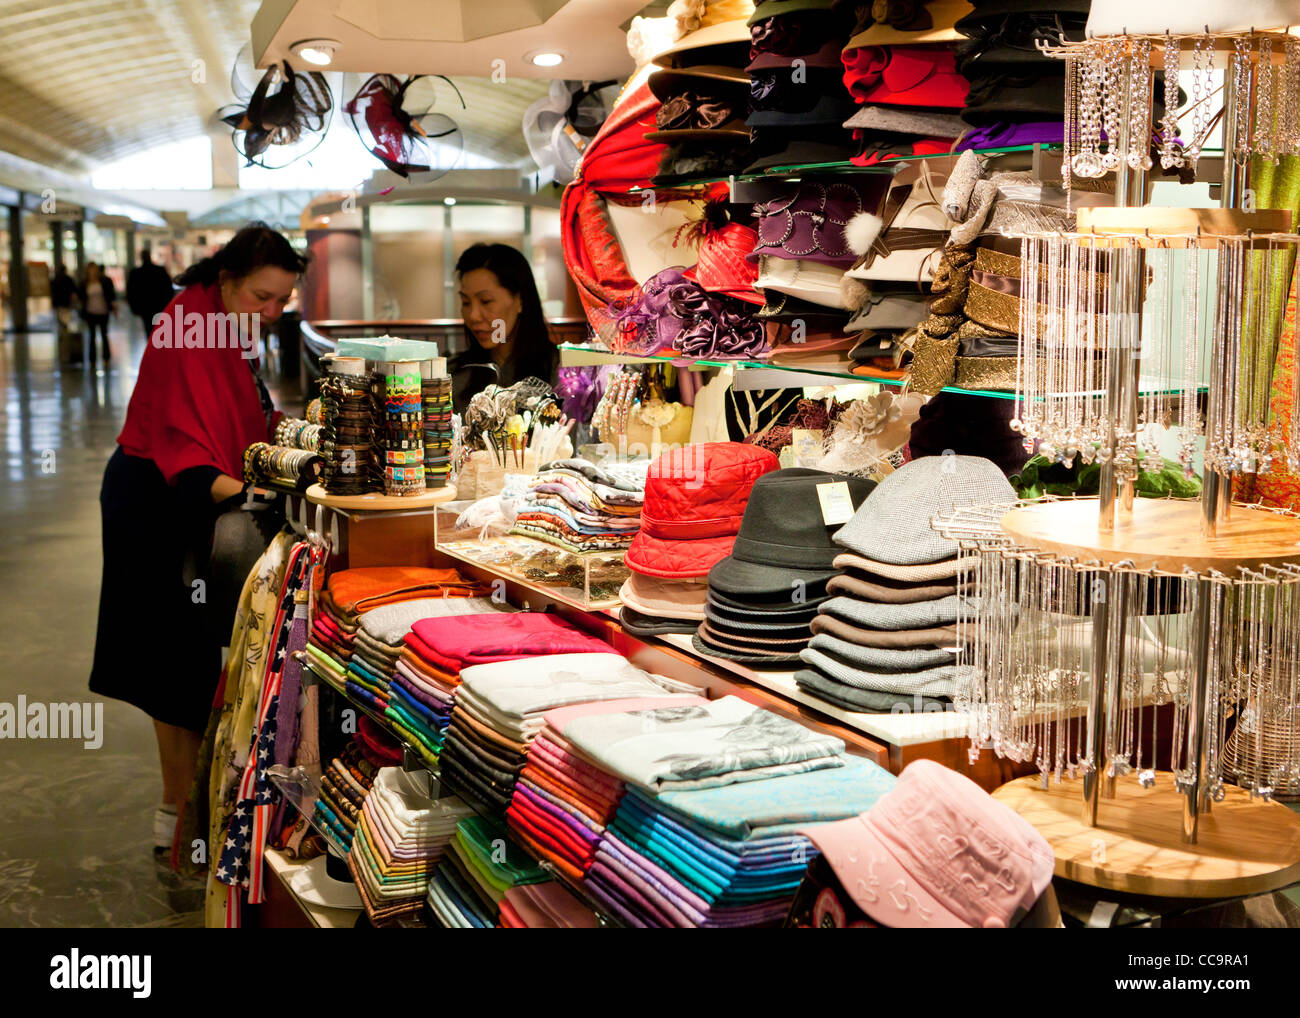 A garment vendor stand Stock Photo